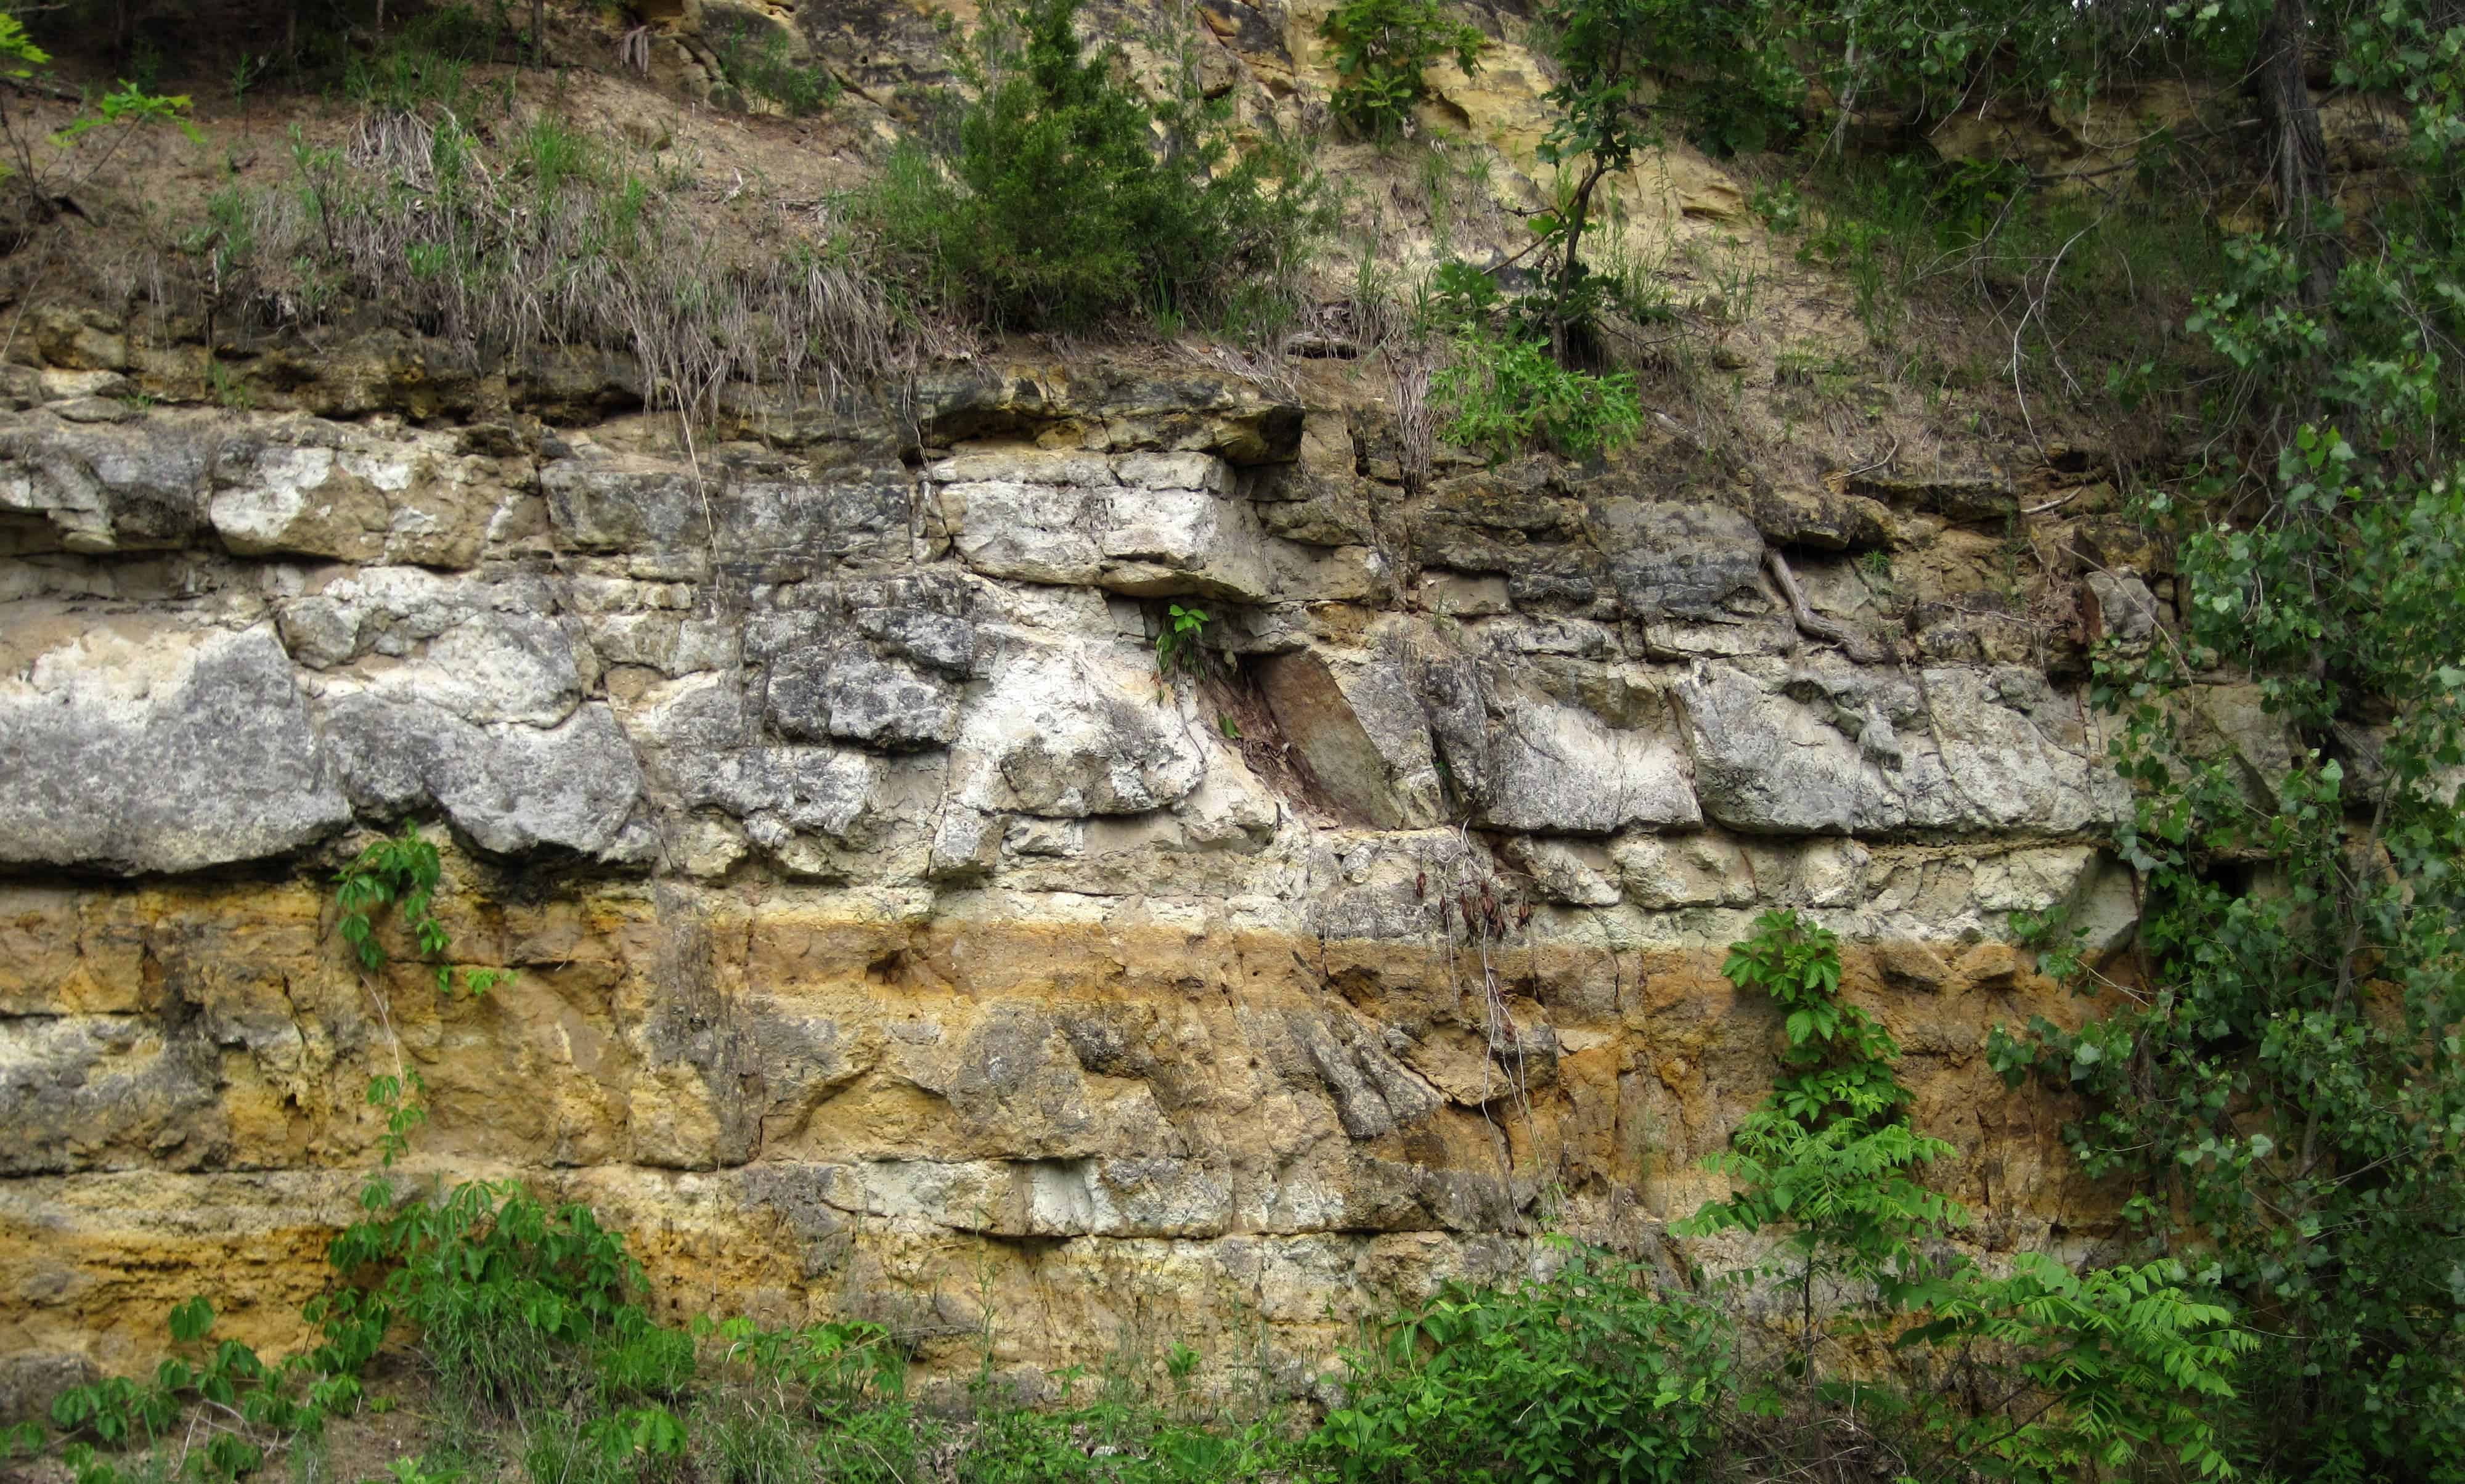 Cambrian rocks.